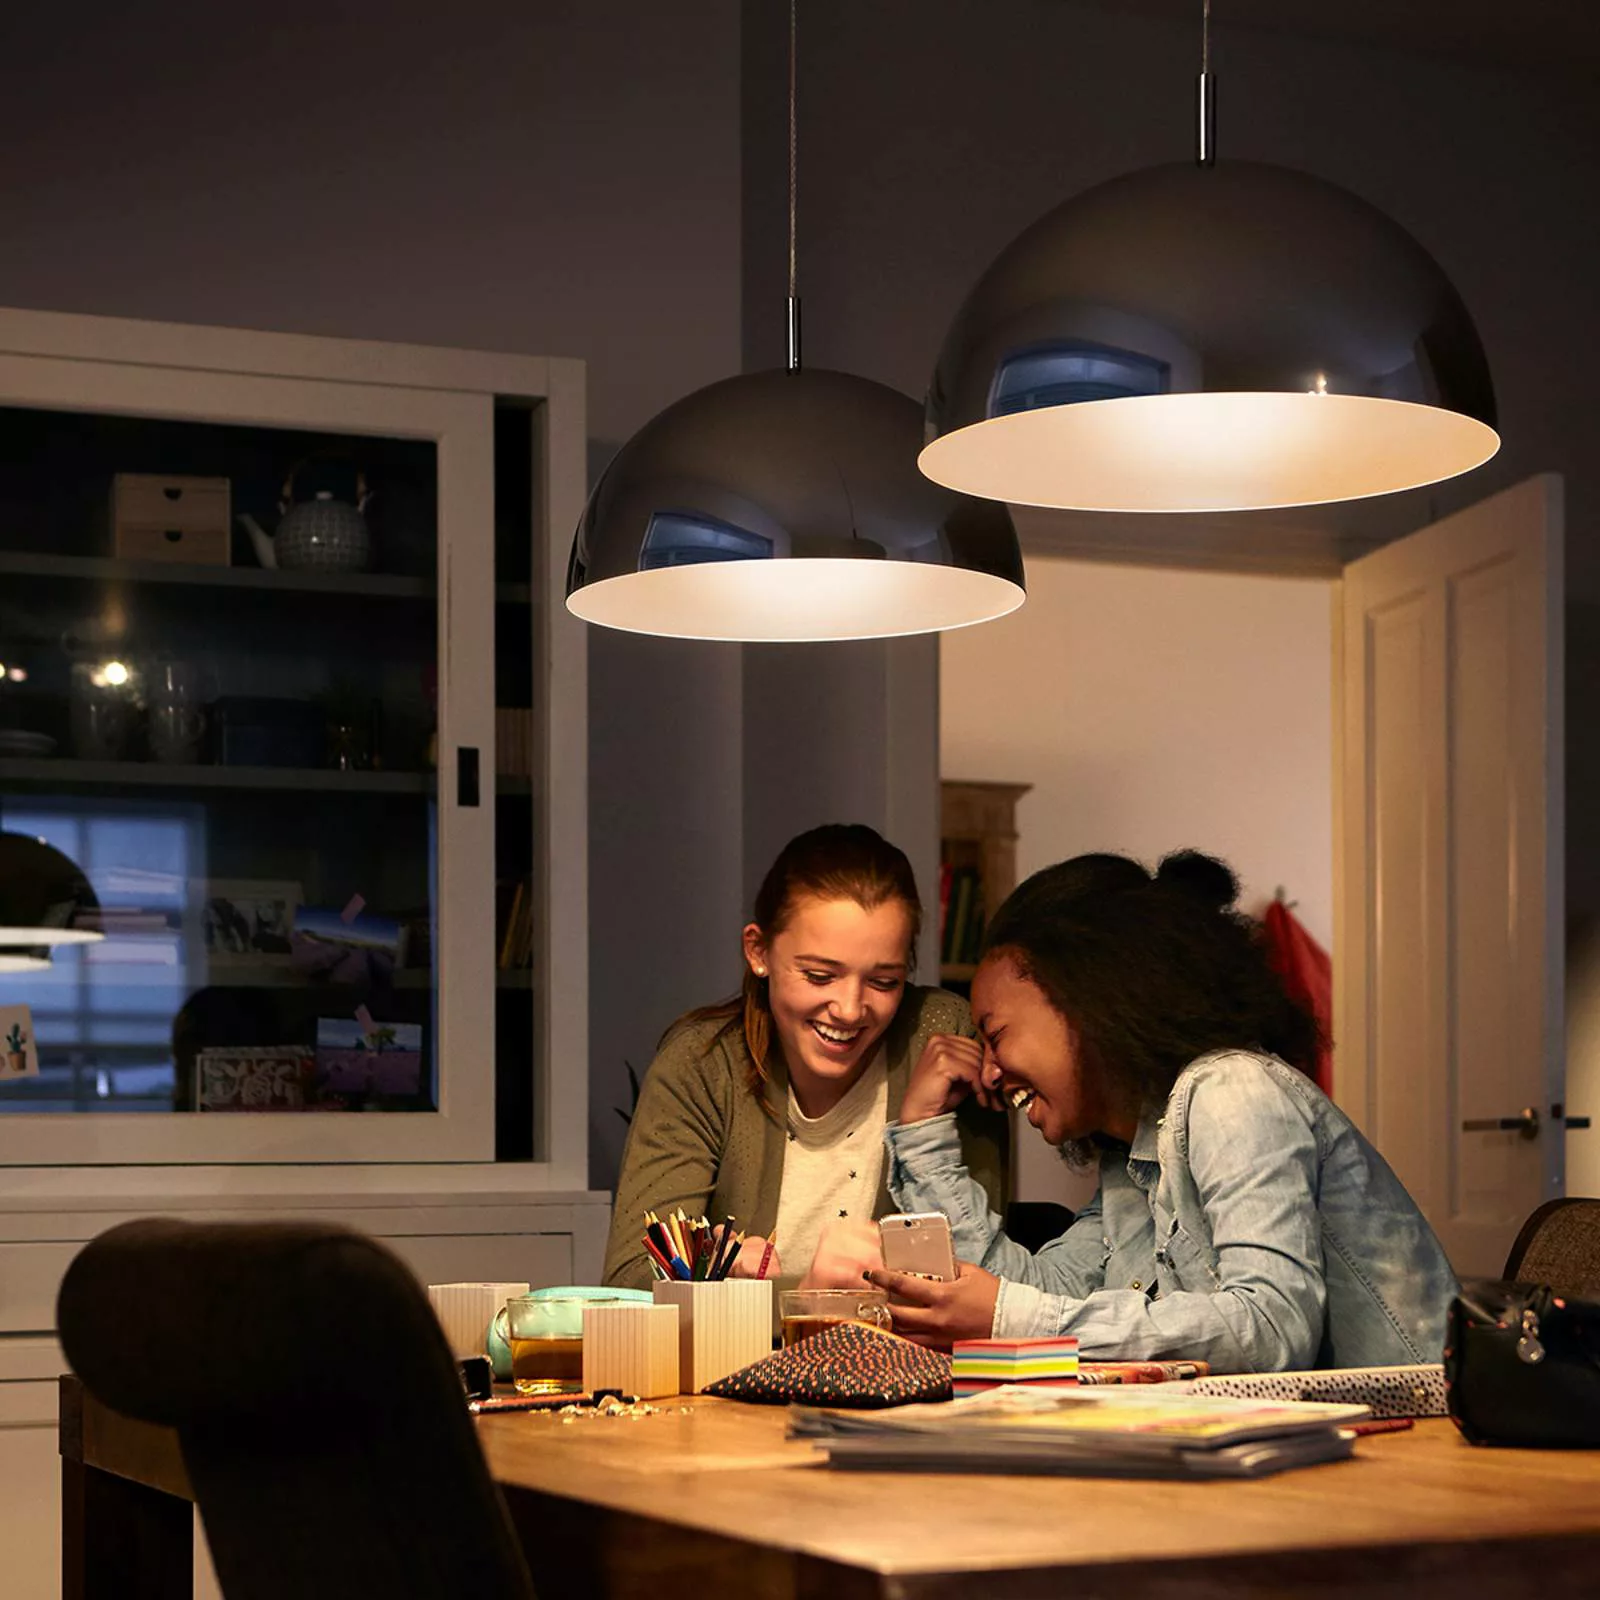 Philips LED-Globelampe E27 G120 10,5W 2.700K weiß günstig online kaufen